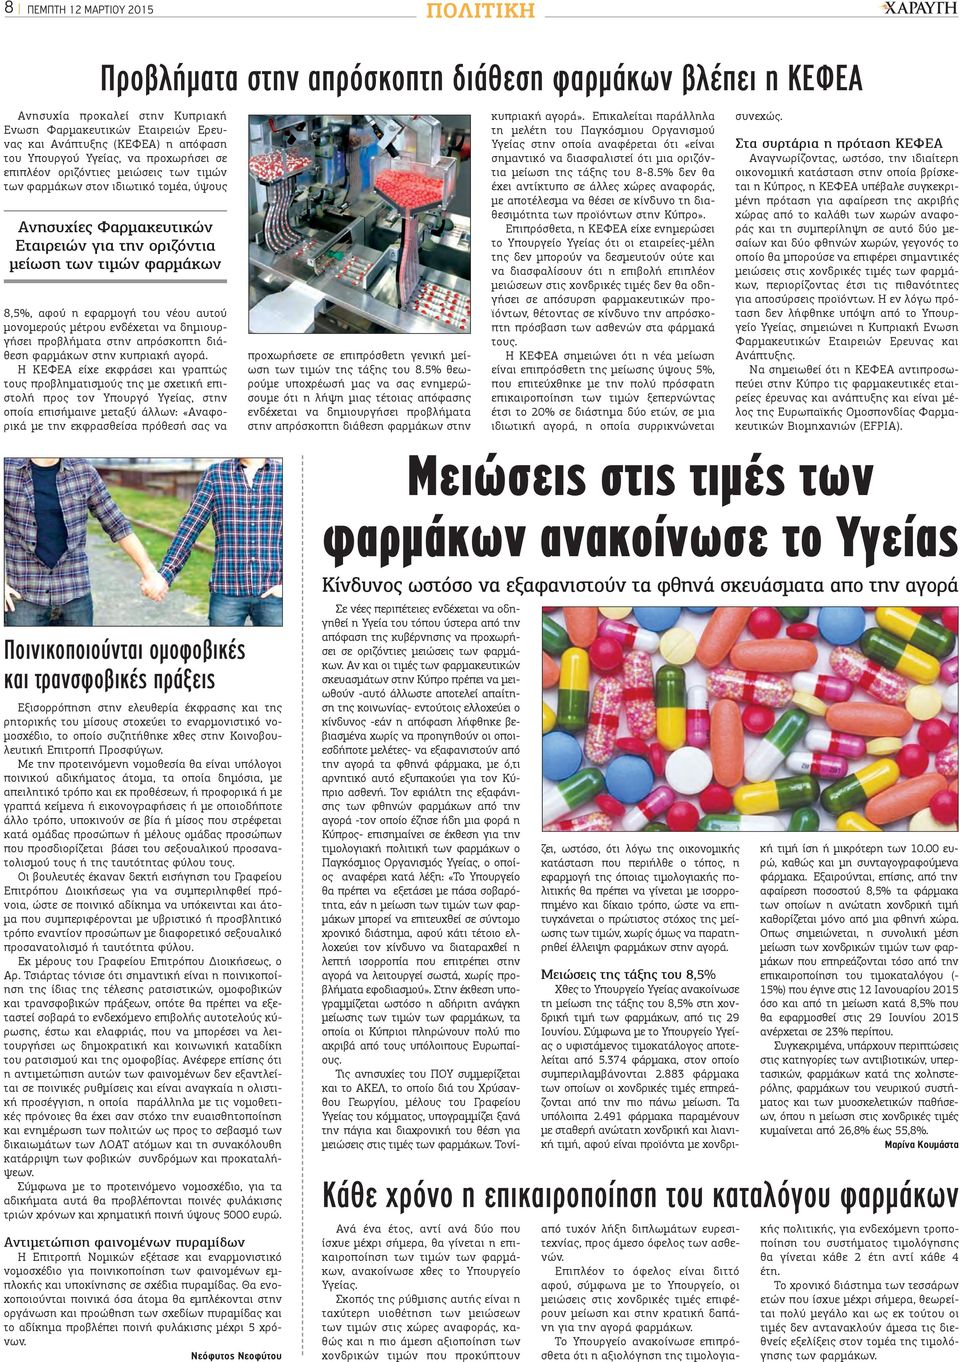 αφού η εφαρμογή του νέου αυτού μονομερούς μέτρου ενδέχεται να δημιουργήσει προβλήματα στην απρόσκοπτη διάθεση φαρμάκων στην κυπριακή αγορά.